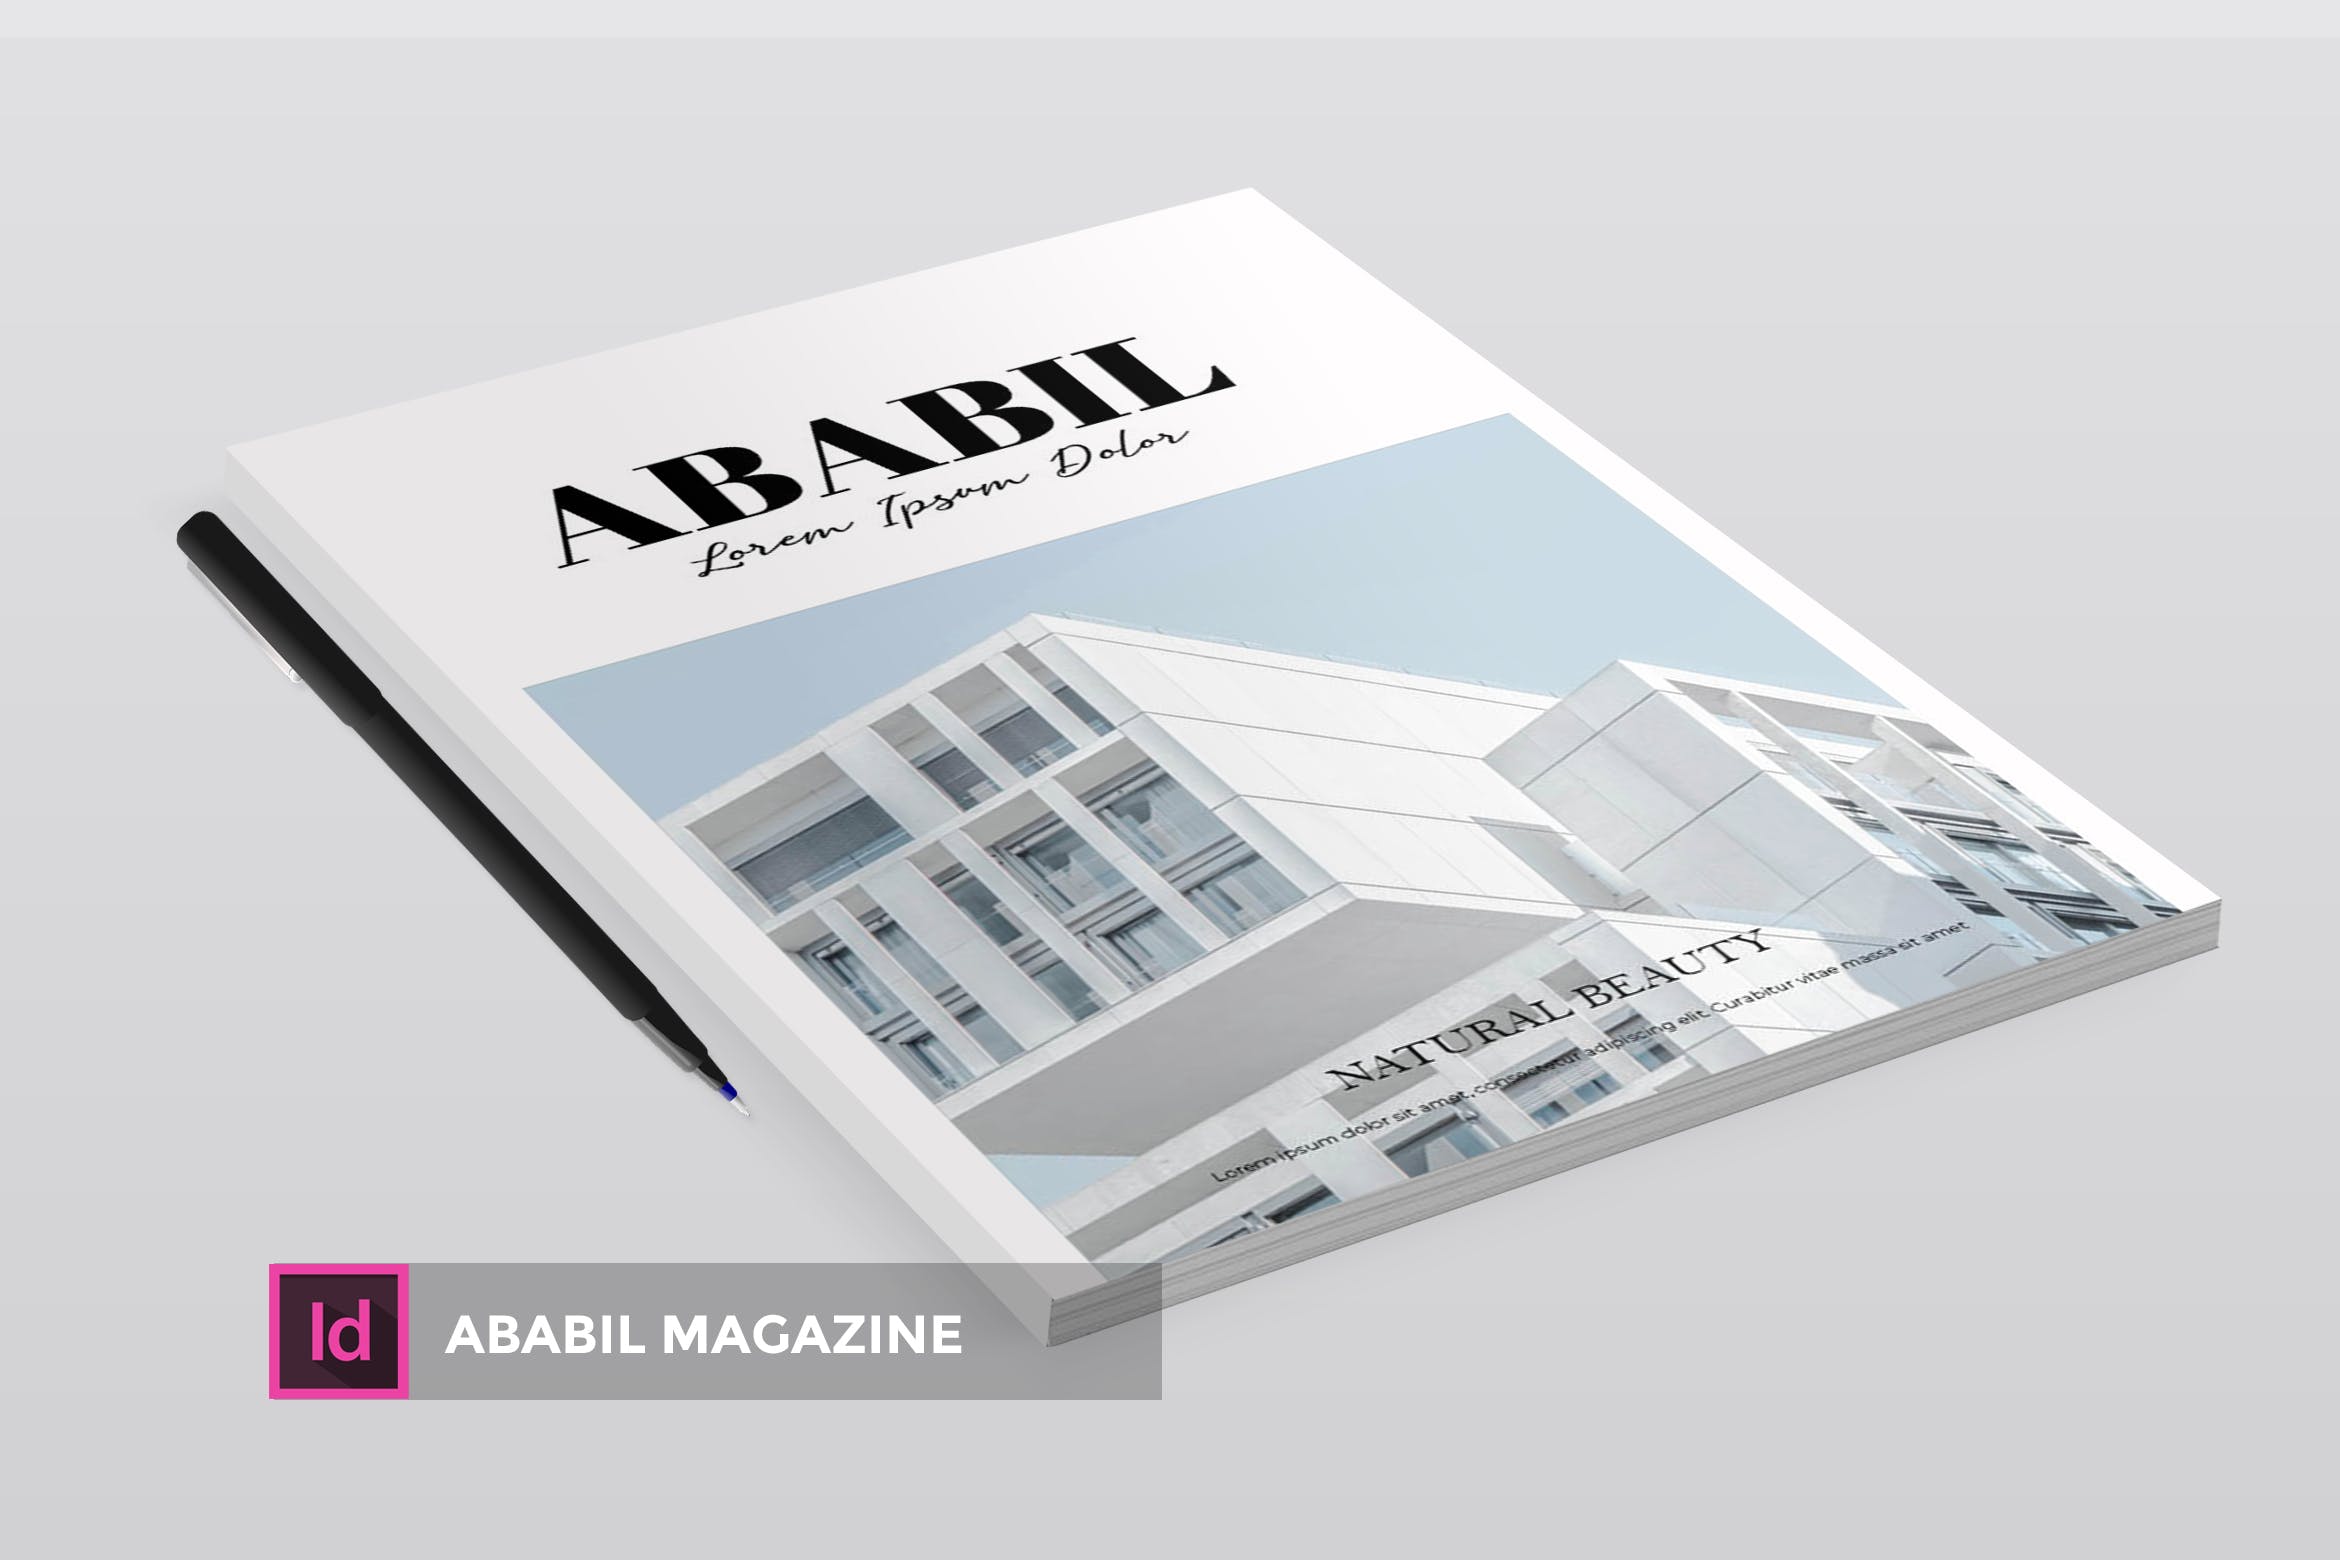 高端建筑/设计/房地产主题非凡图库精选杂志排版设计INDD模板 ABABIL | Magazine Template插图